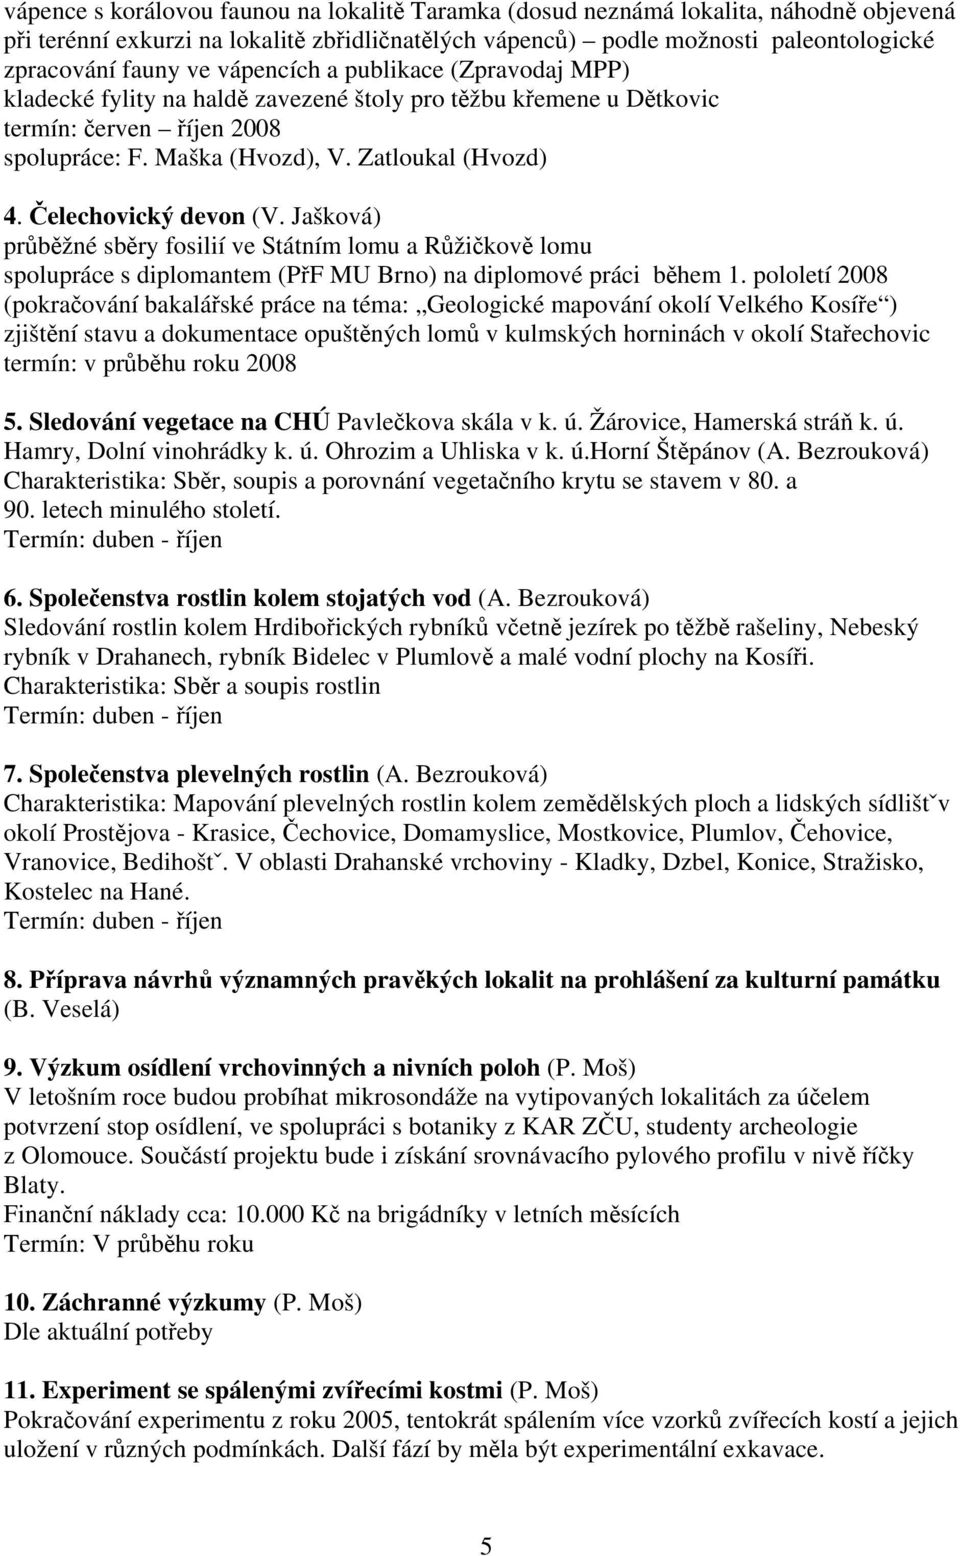 Čelechovický devon (V. Jašková) průběžné sběry fosilií ve Státním lomu a Růžičkově lomu spolupráce s diplomantem (PřF MU Brno) na diplomové práci během 1.